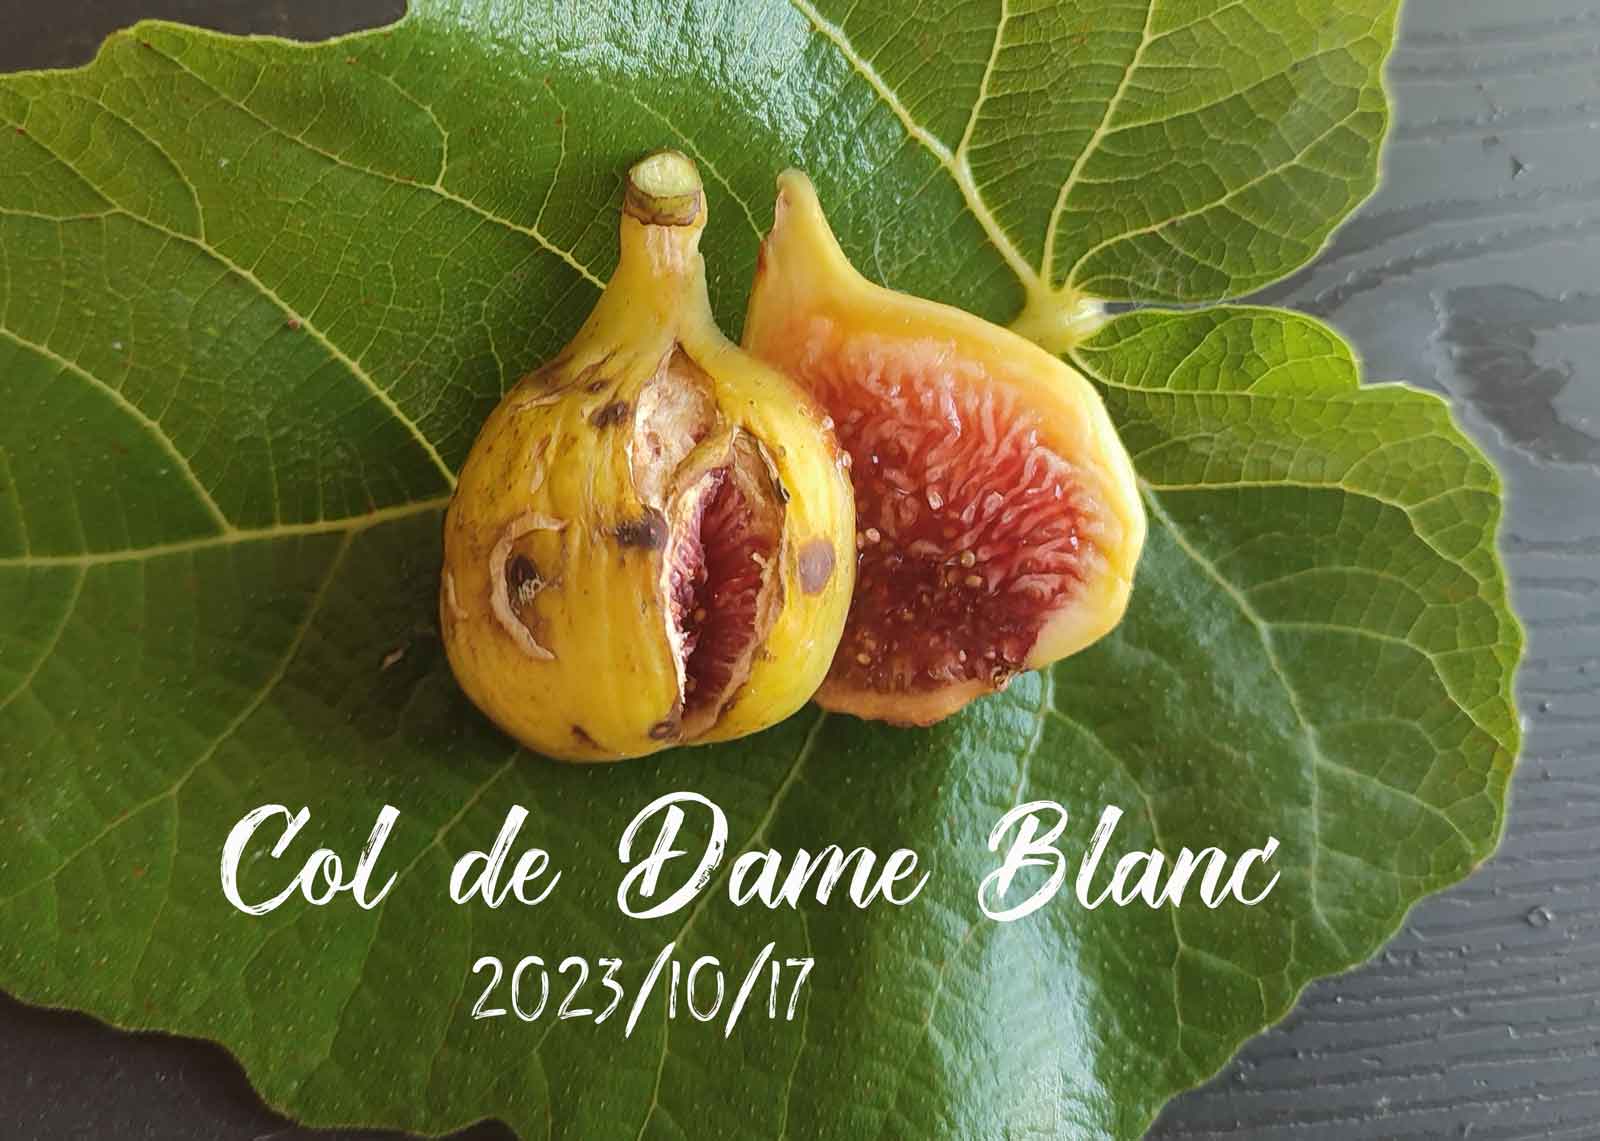 Col de Dame Blanc